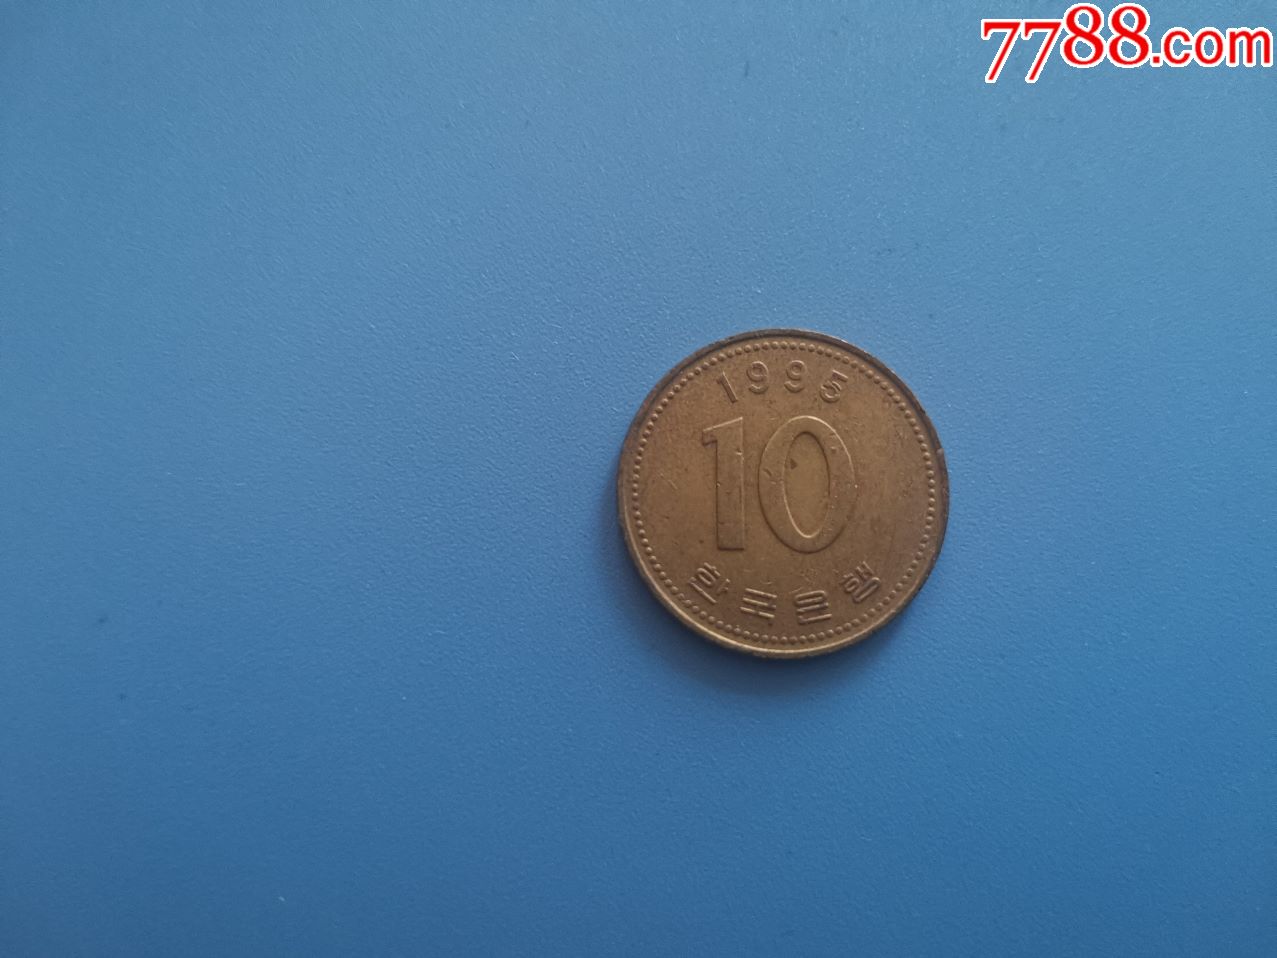 1995年朝鲜10元铜币